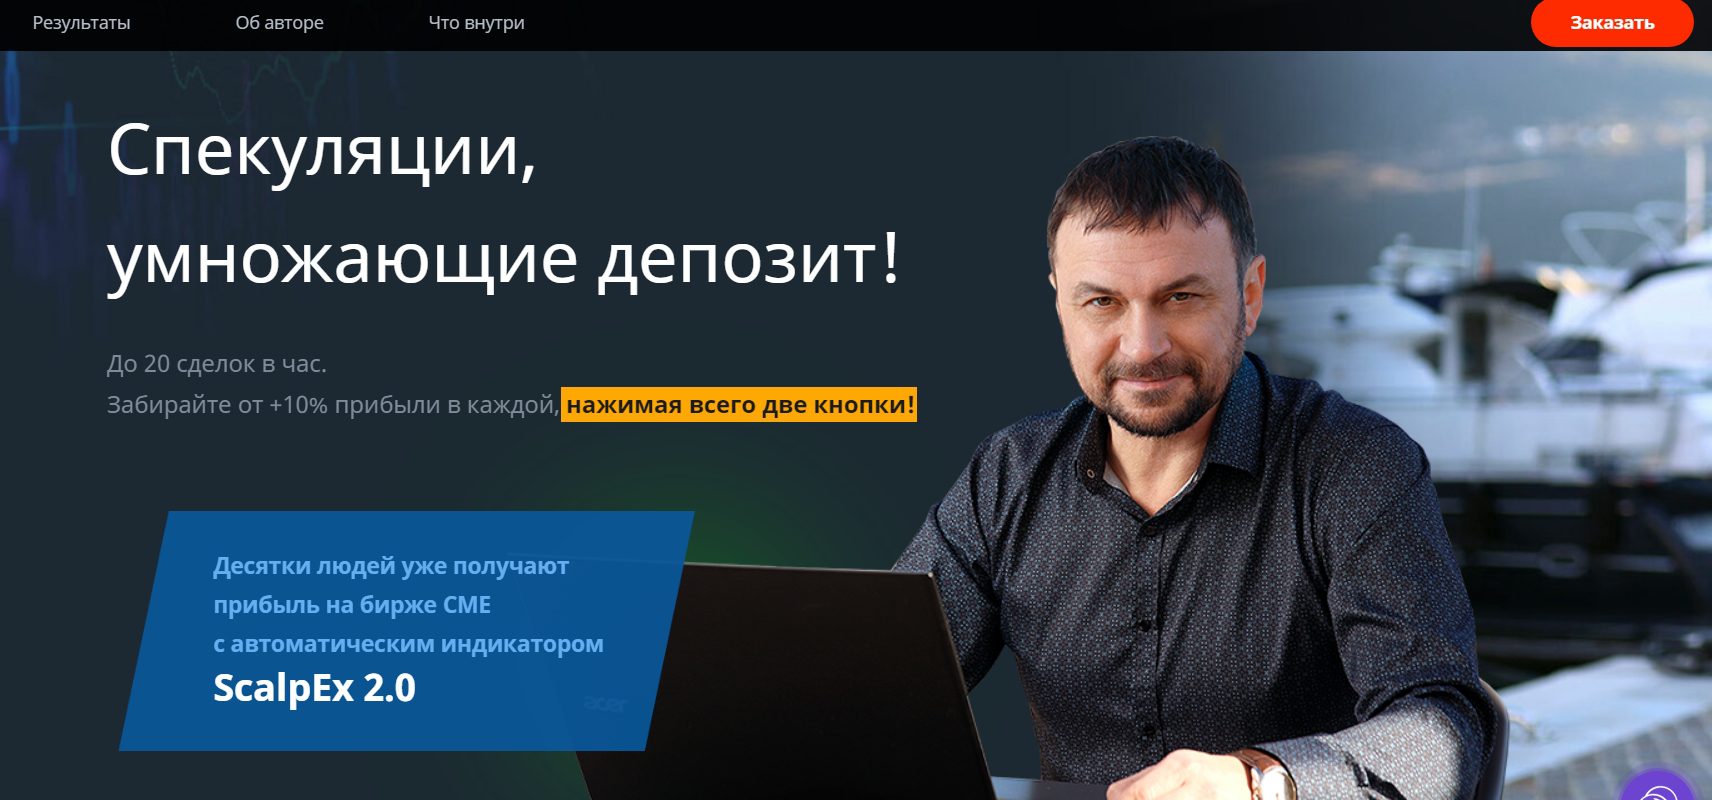 Сайт трейдера Дмитрия Брылякова